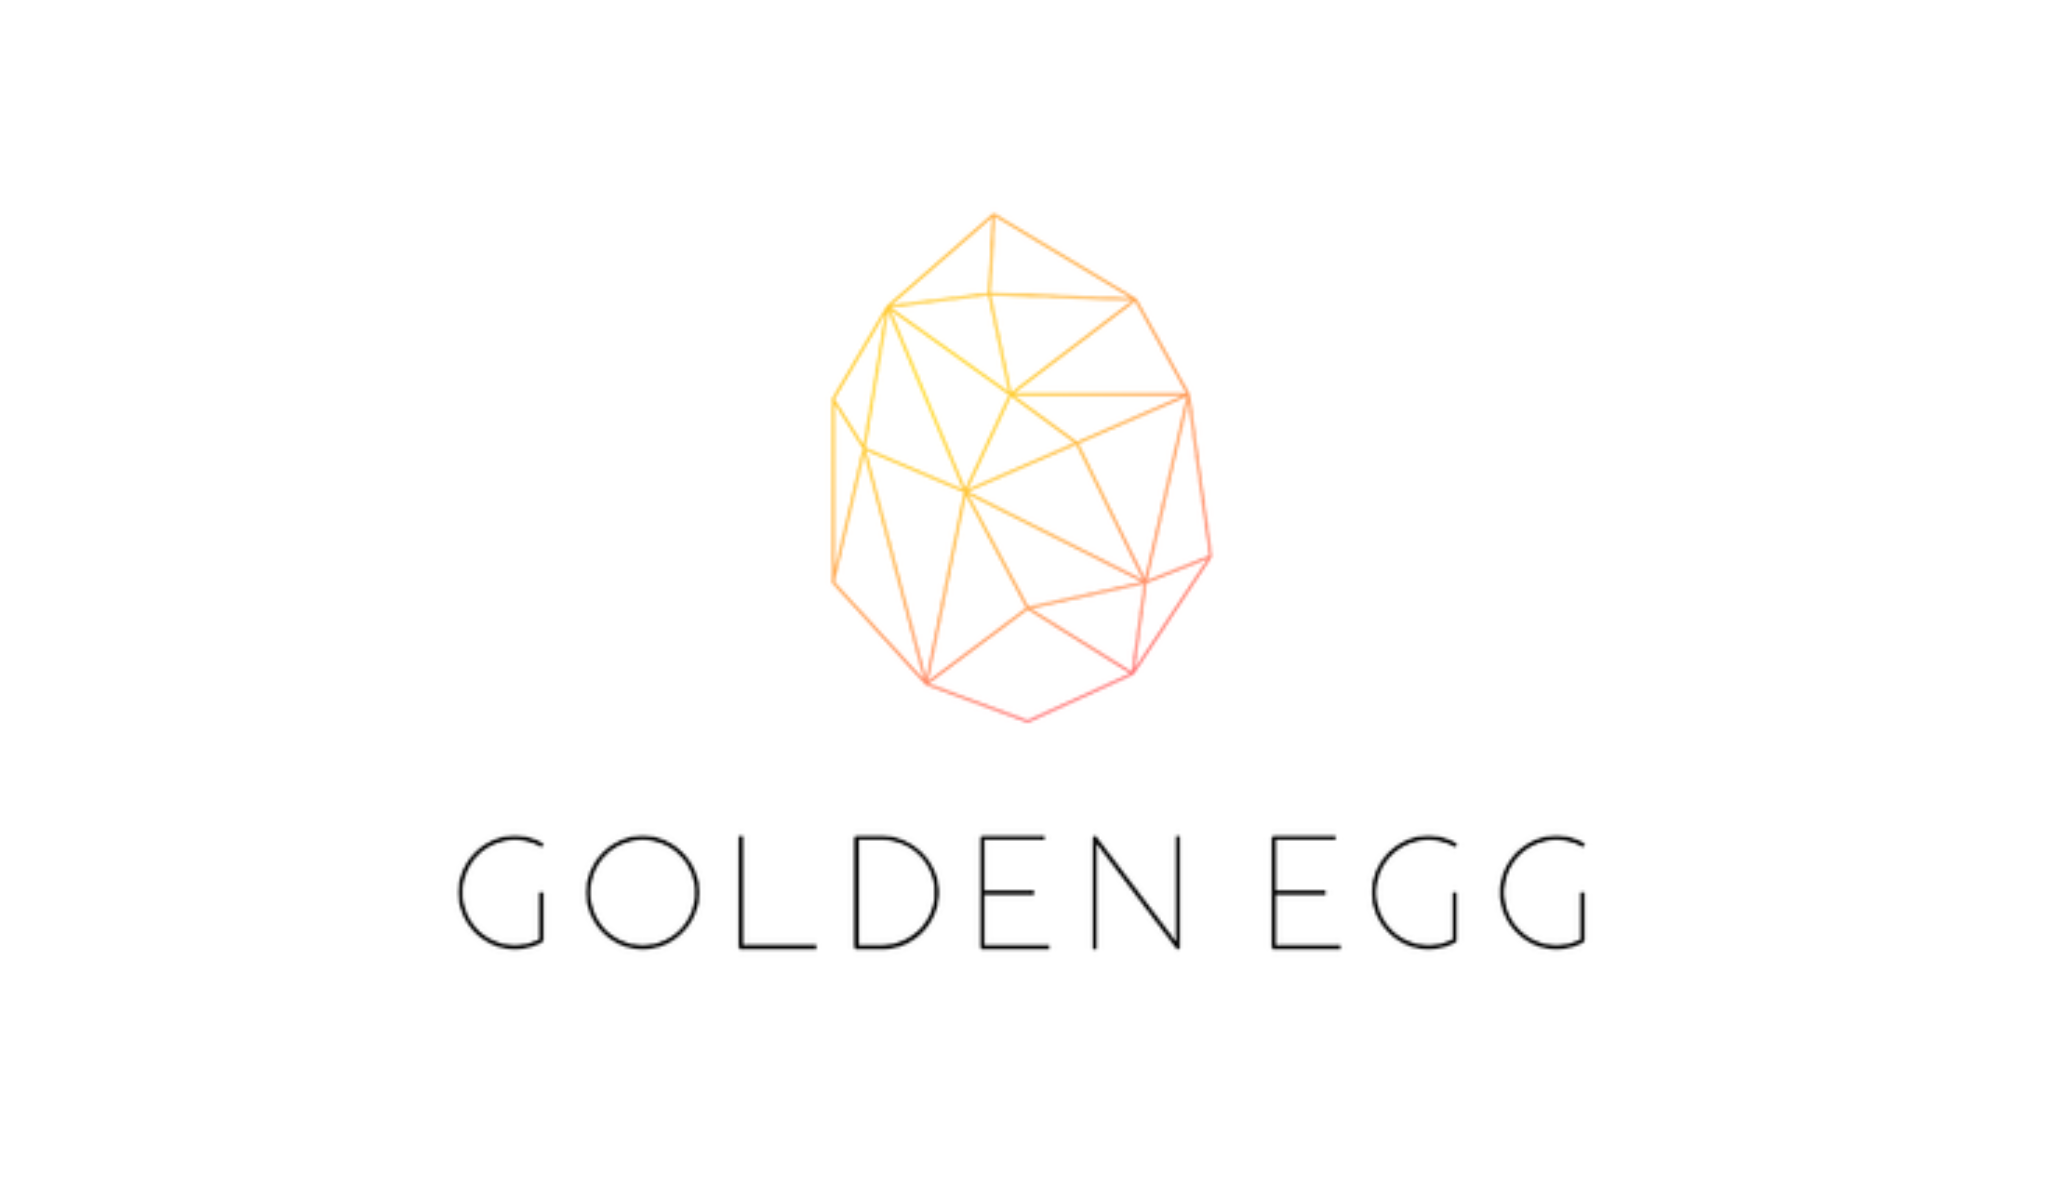 大応援しているエッグフォワード、創業12期目を迎え GOLDEN EGG 初号ファンド設立